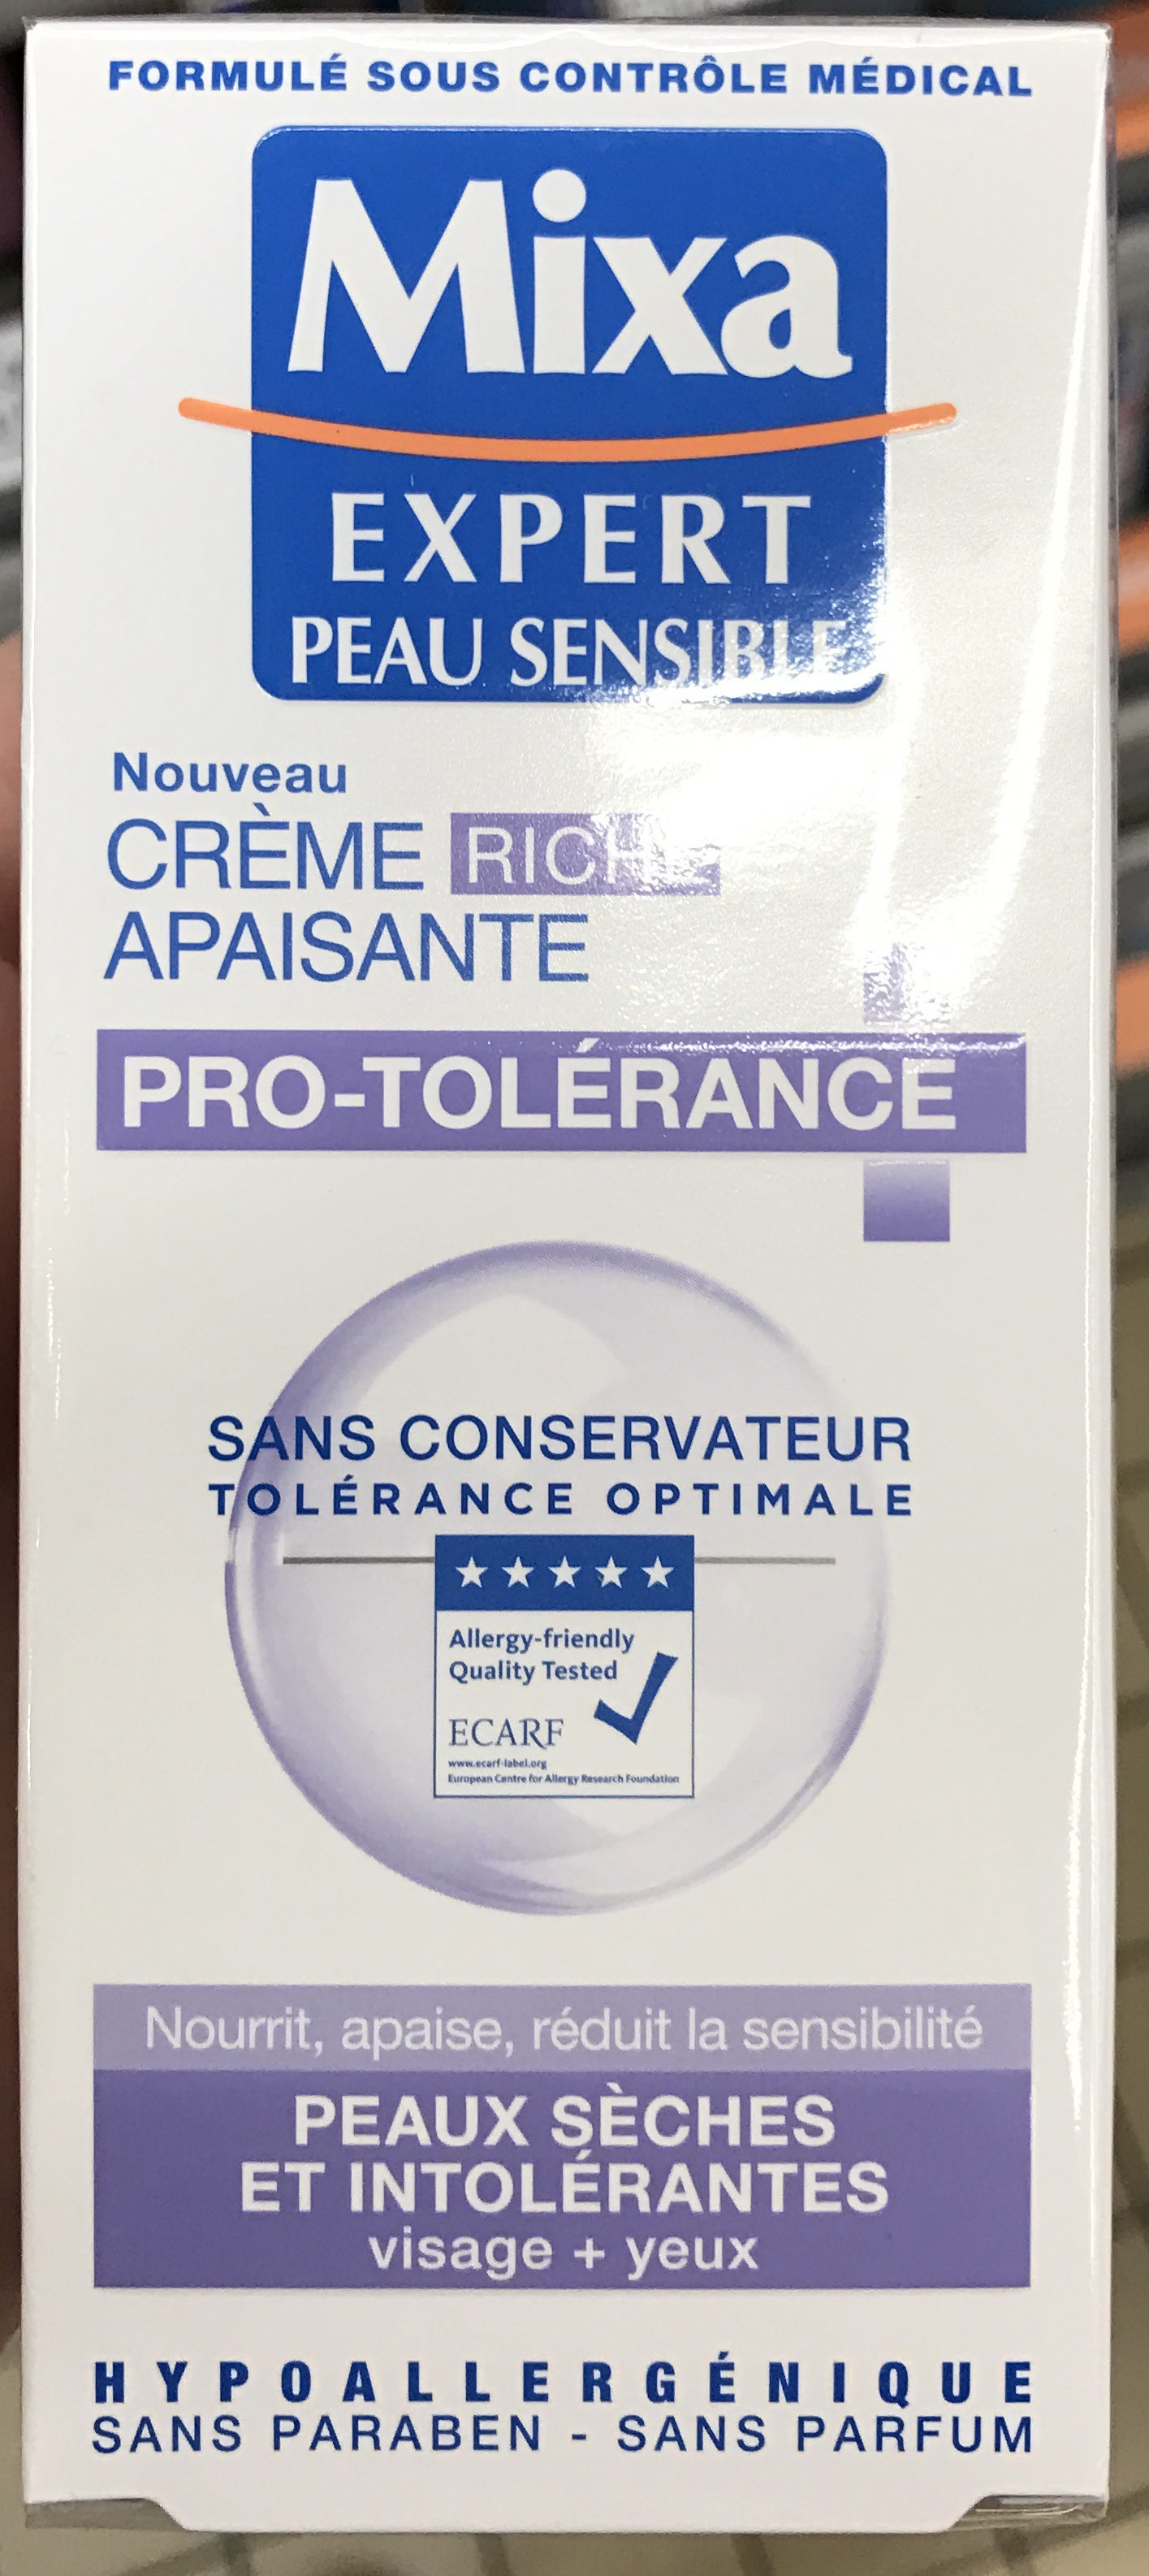 Crème riche apaisante pro-tolérance - Product - fr